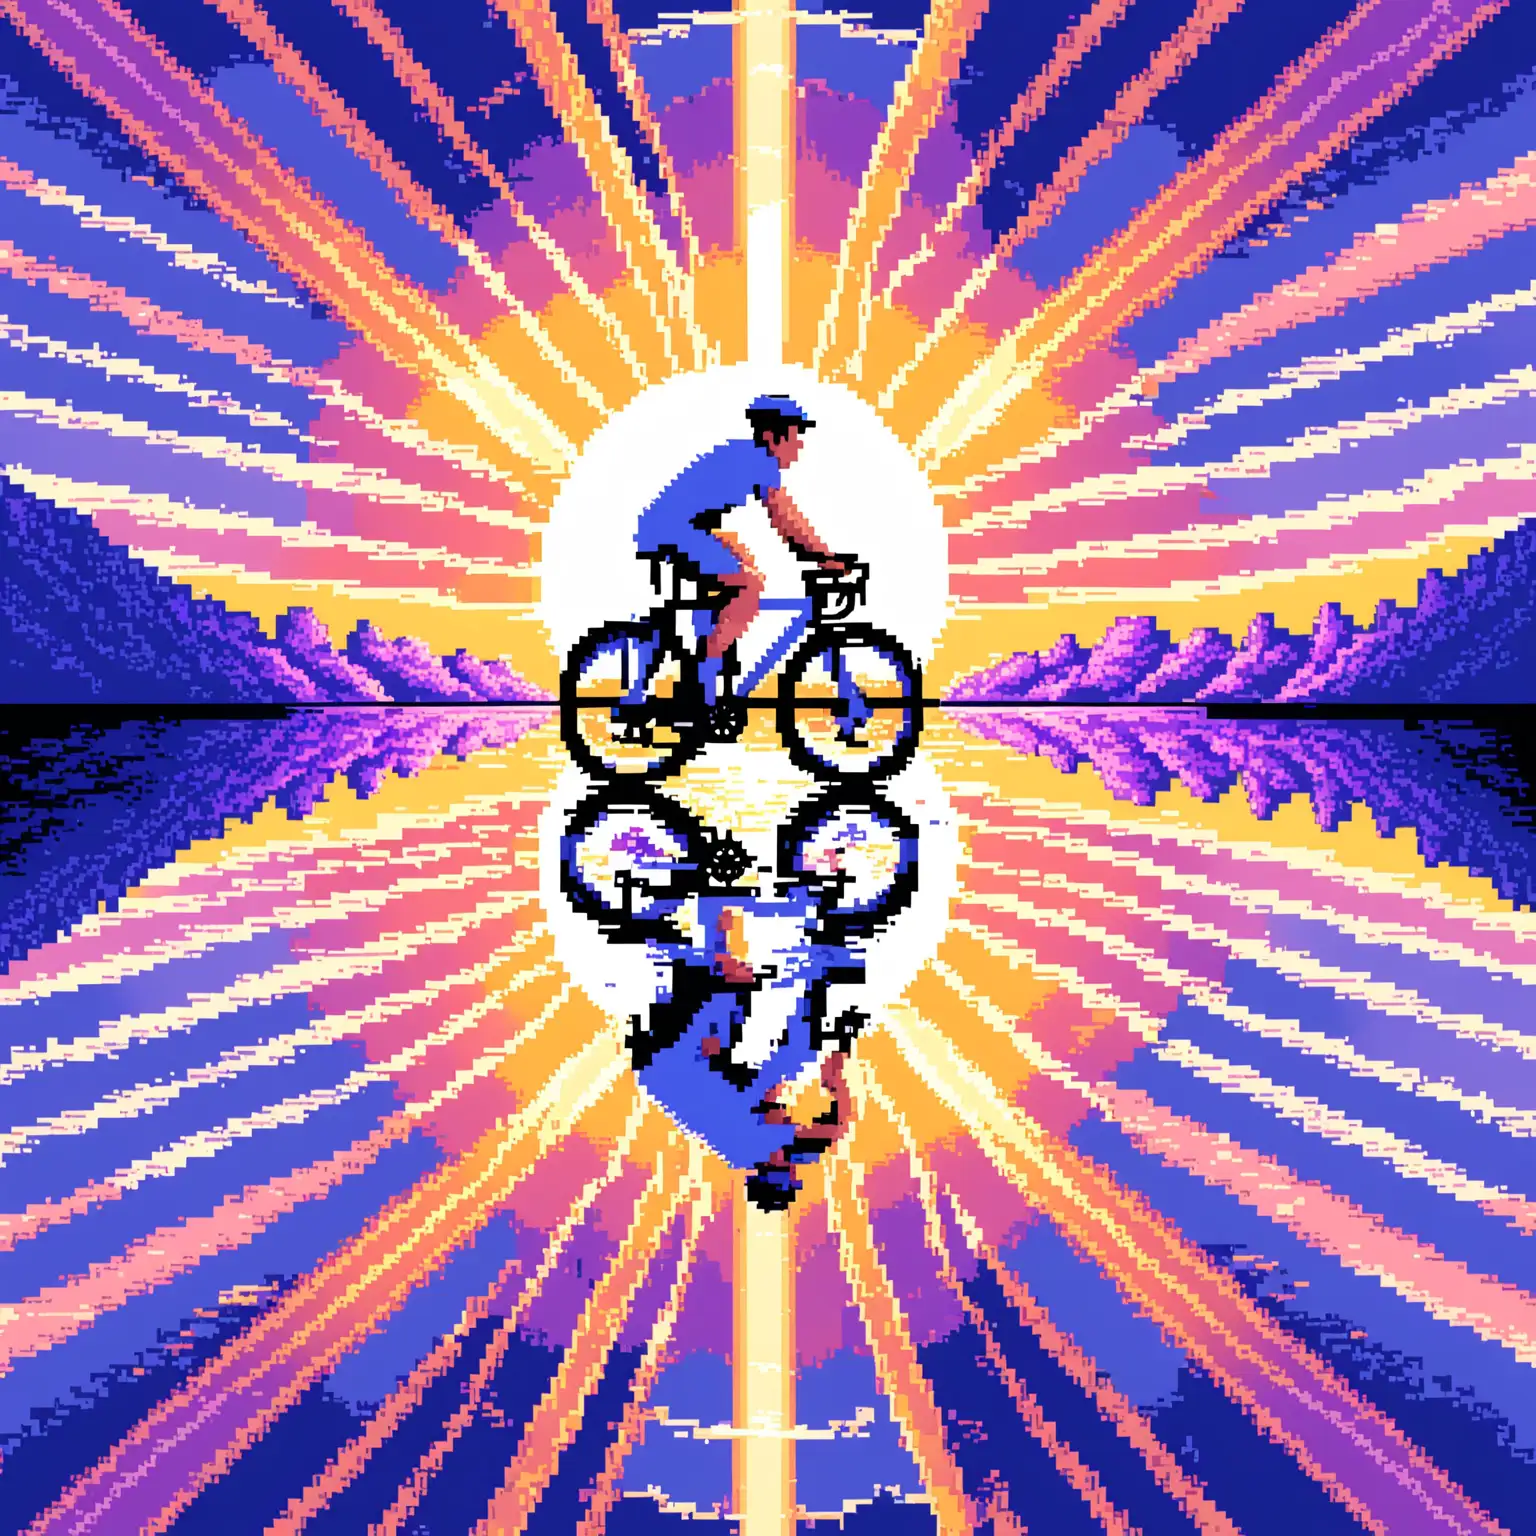 像素风格，蓝色、白色和紫色配色，骑自行车的人，骑手完全映照在太阳里，作为头像，骑车人要占图像大范围